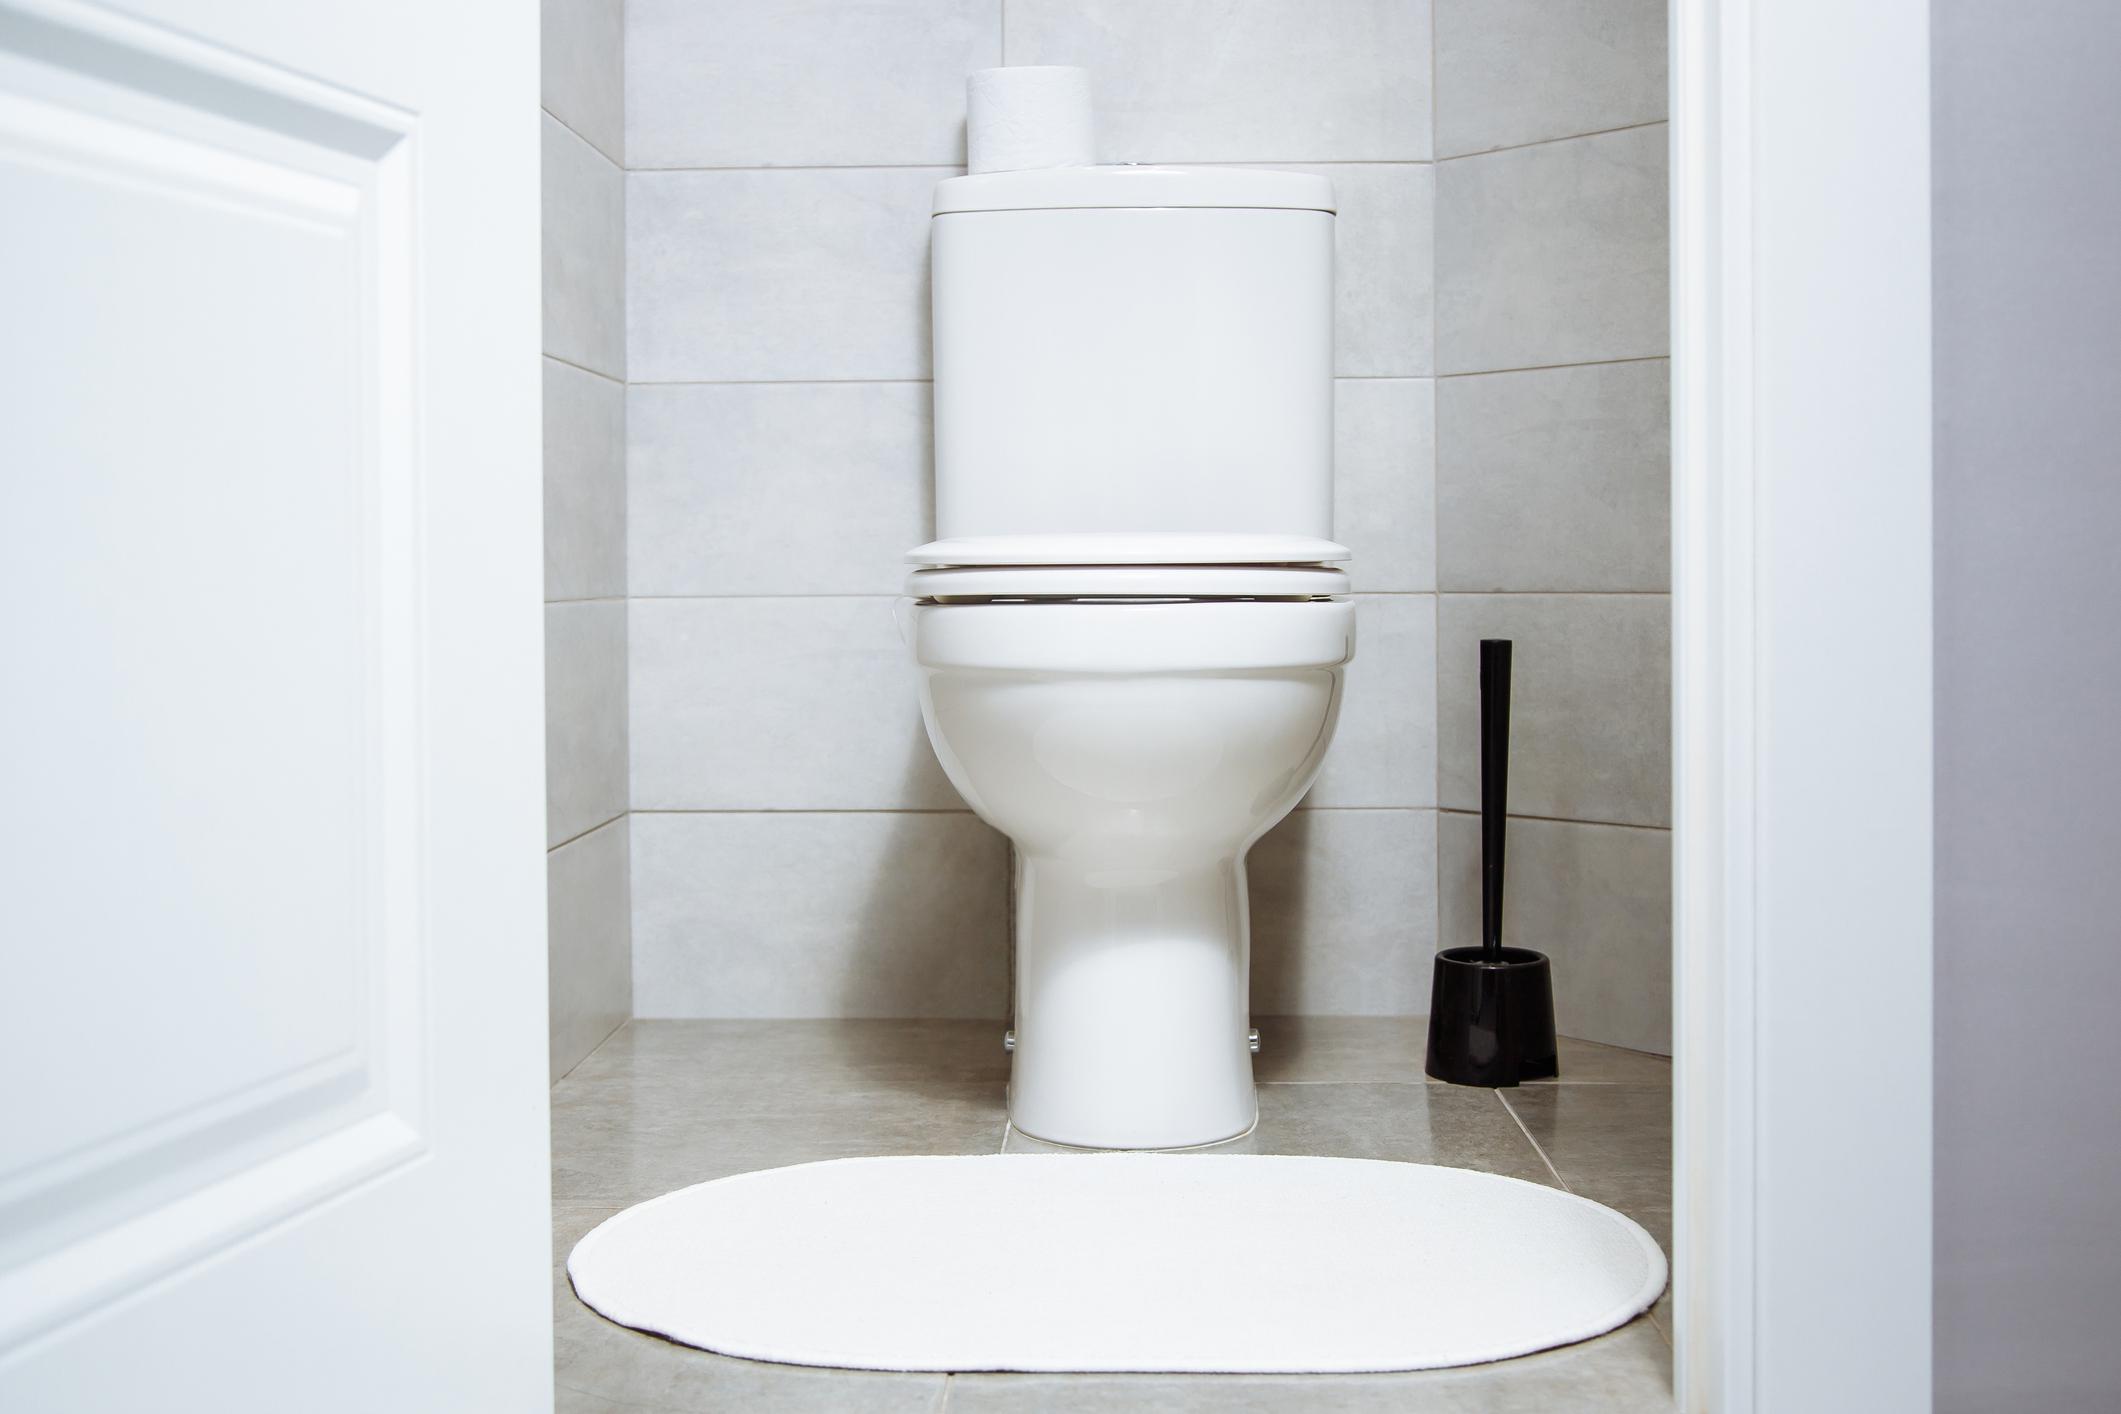 Une trop grande quantité de papier toilette, des restes de nourriture ou des produits sanitaires sont souvent la cause de toilettes bouchées. 